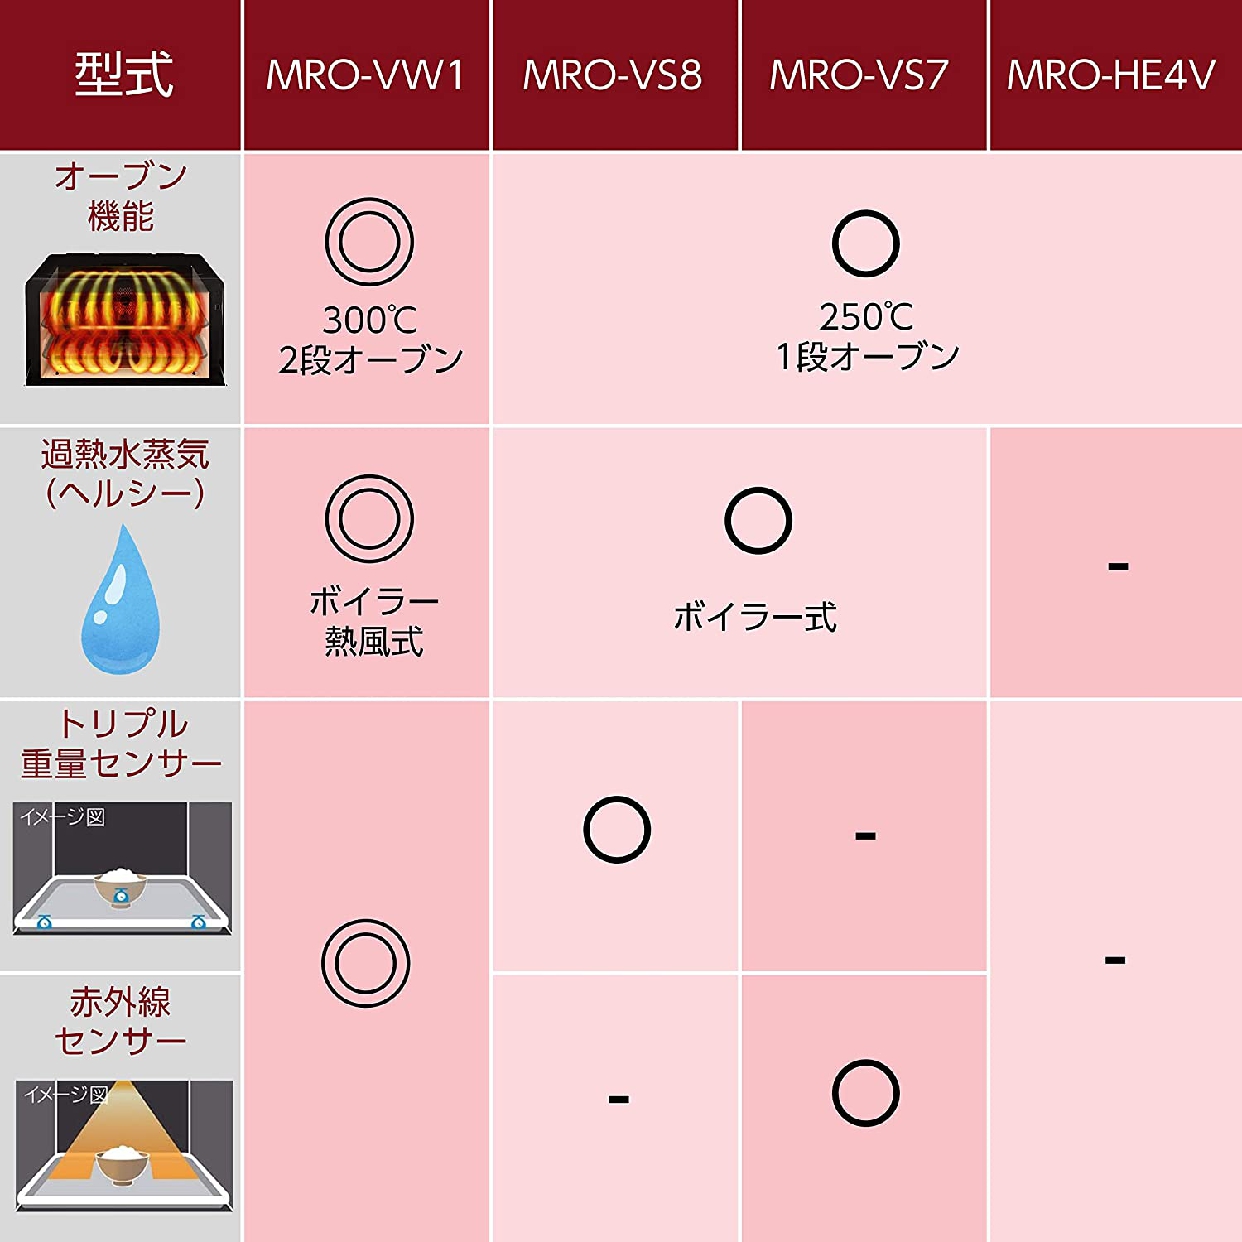 日立(HITACHI) ヘルシーシェフ MRO-VS7の商品画像2 